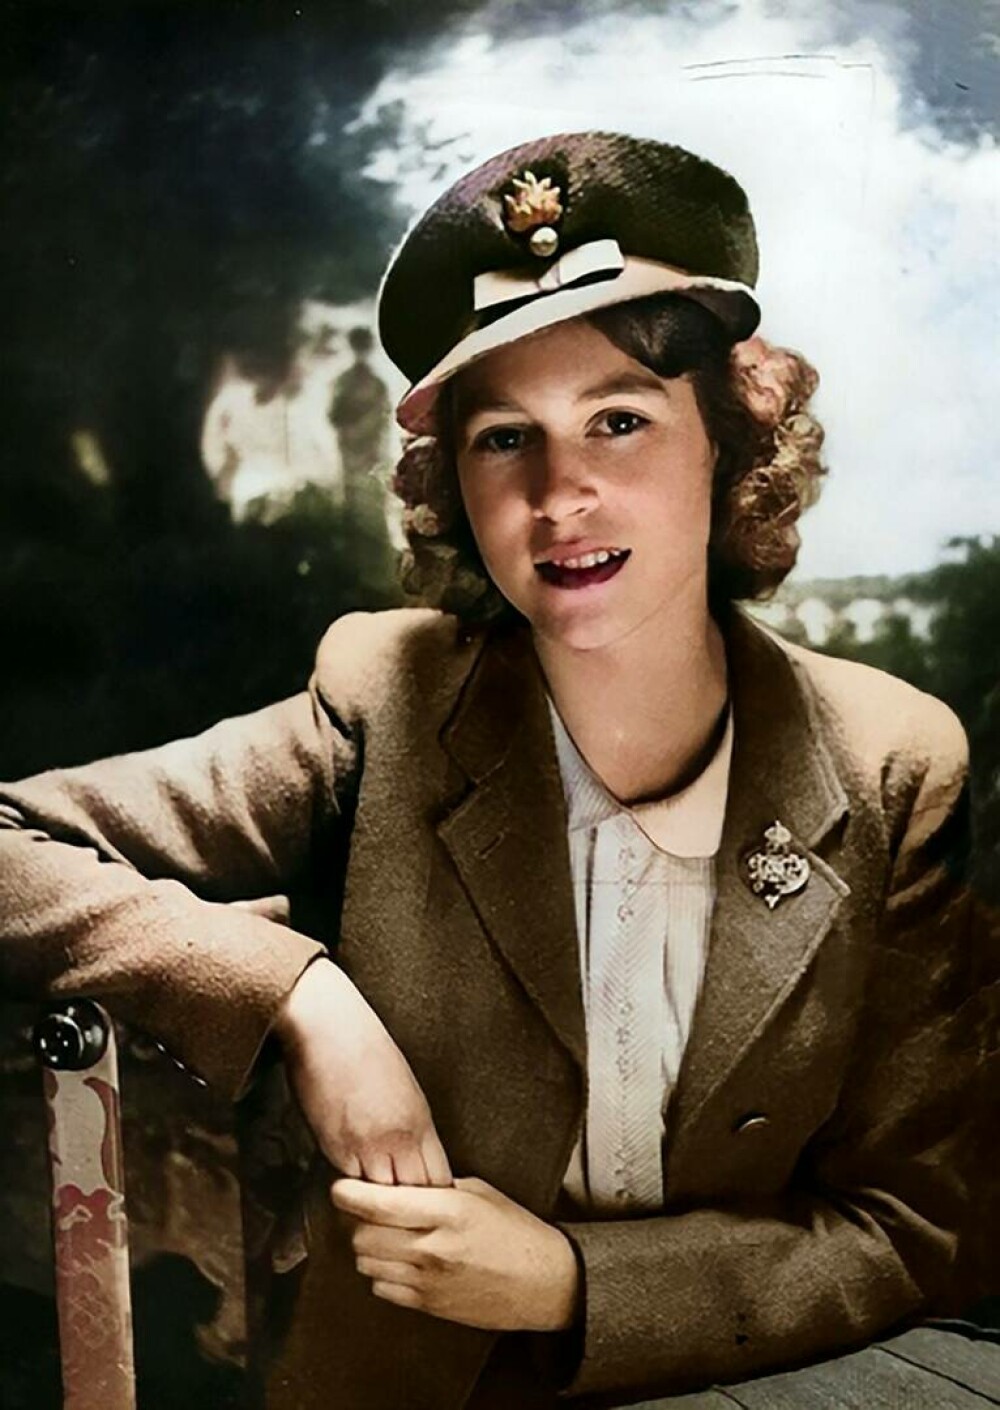 Imagini memorabile cu regina Elisabeta a II-a din timpul celui de-al Doilea Război Mondial | GALERIE FOTO - Imaginea 5